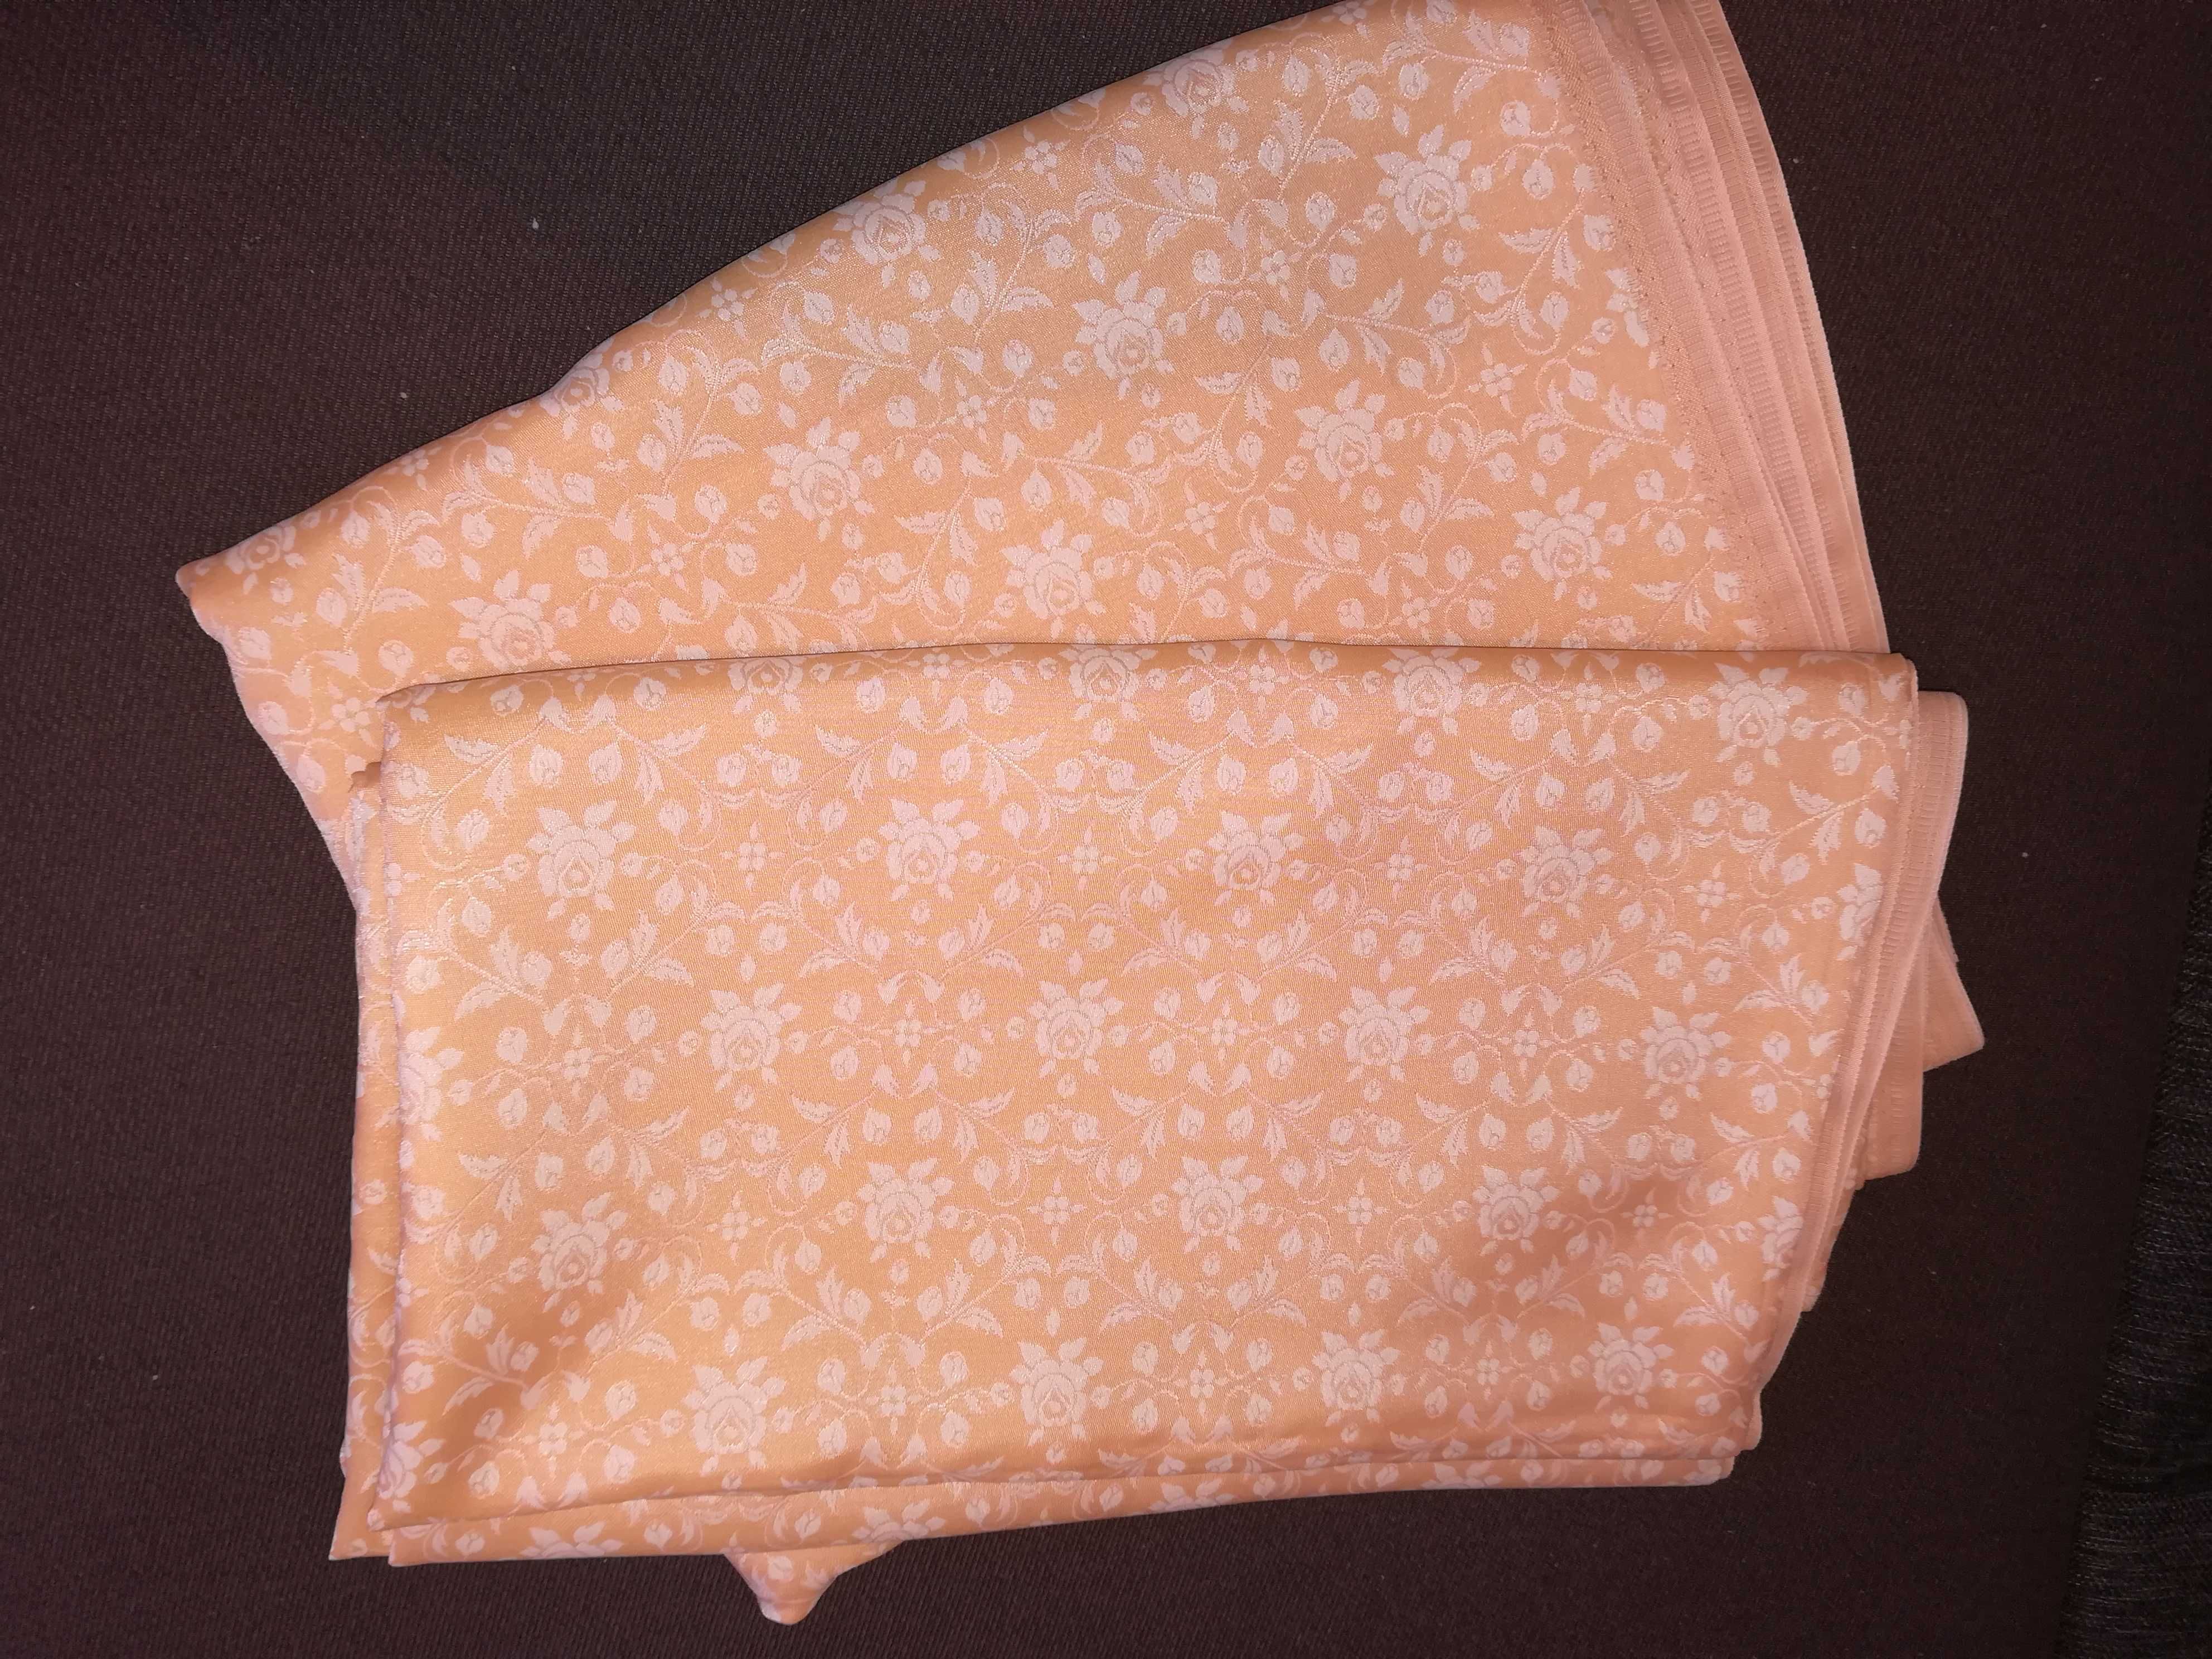 2stronne zasłony z tkaniny ornamentowej- czasy PRL - 2szt, 1,56 x 2,5m